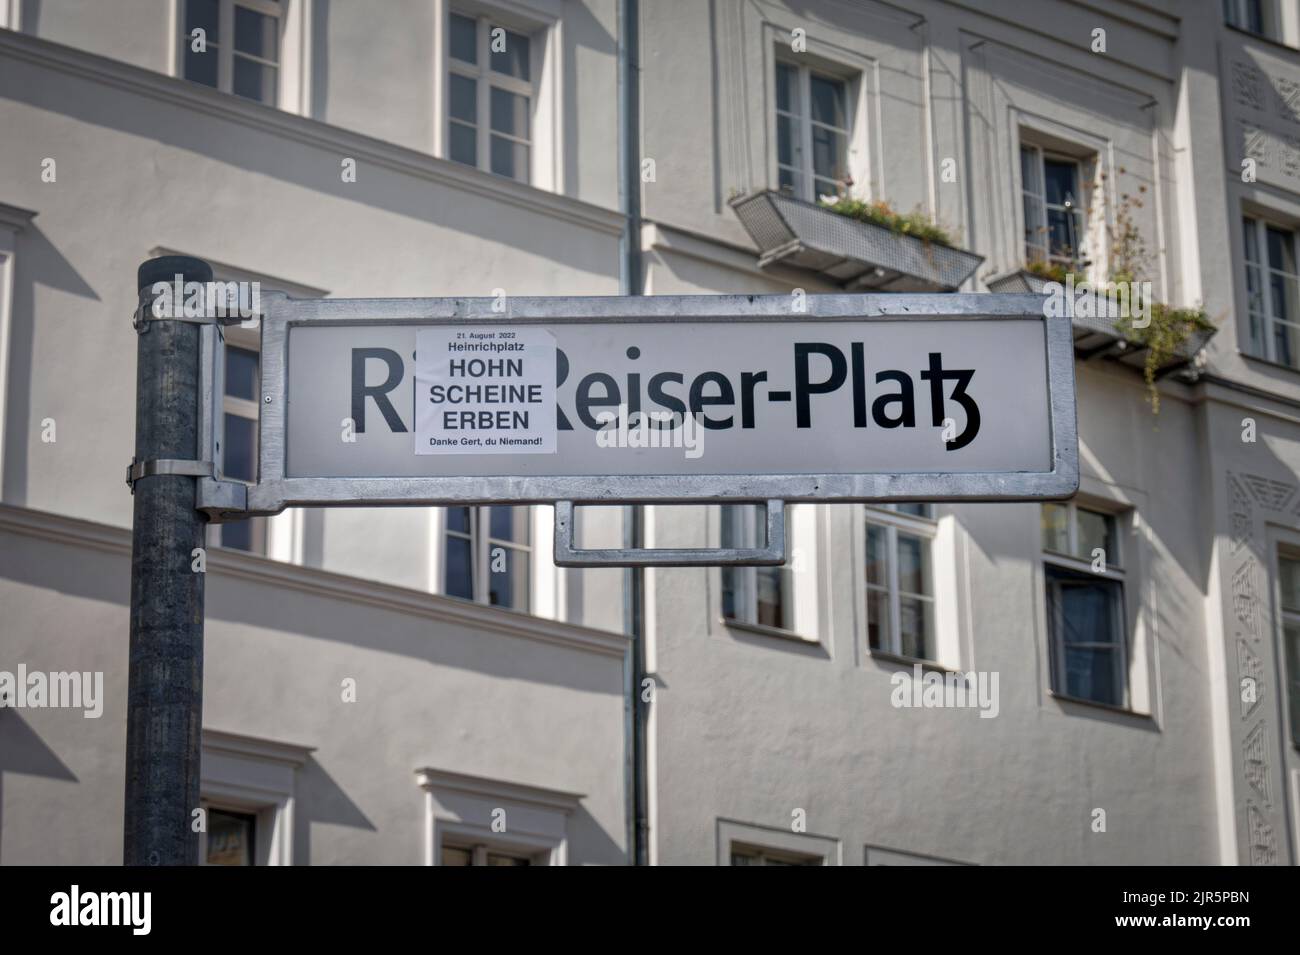 Umbenennung des Heinrichplatzes a Rio-Reiser-Platz a Berlino-Kreuzberg. Notizie, Aktuelles, Foto Stock